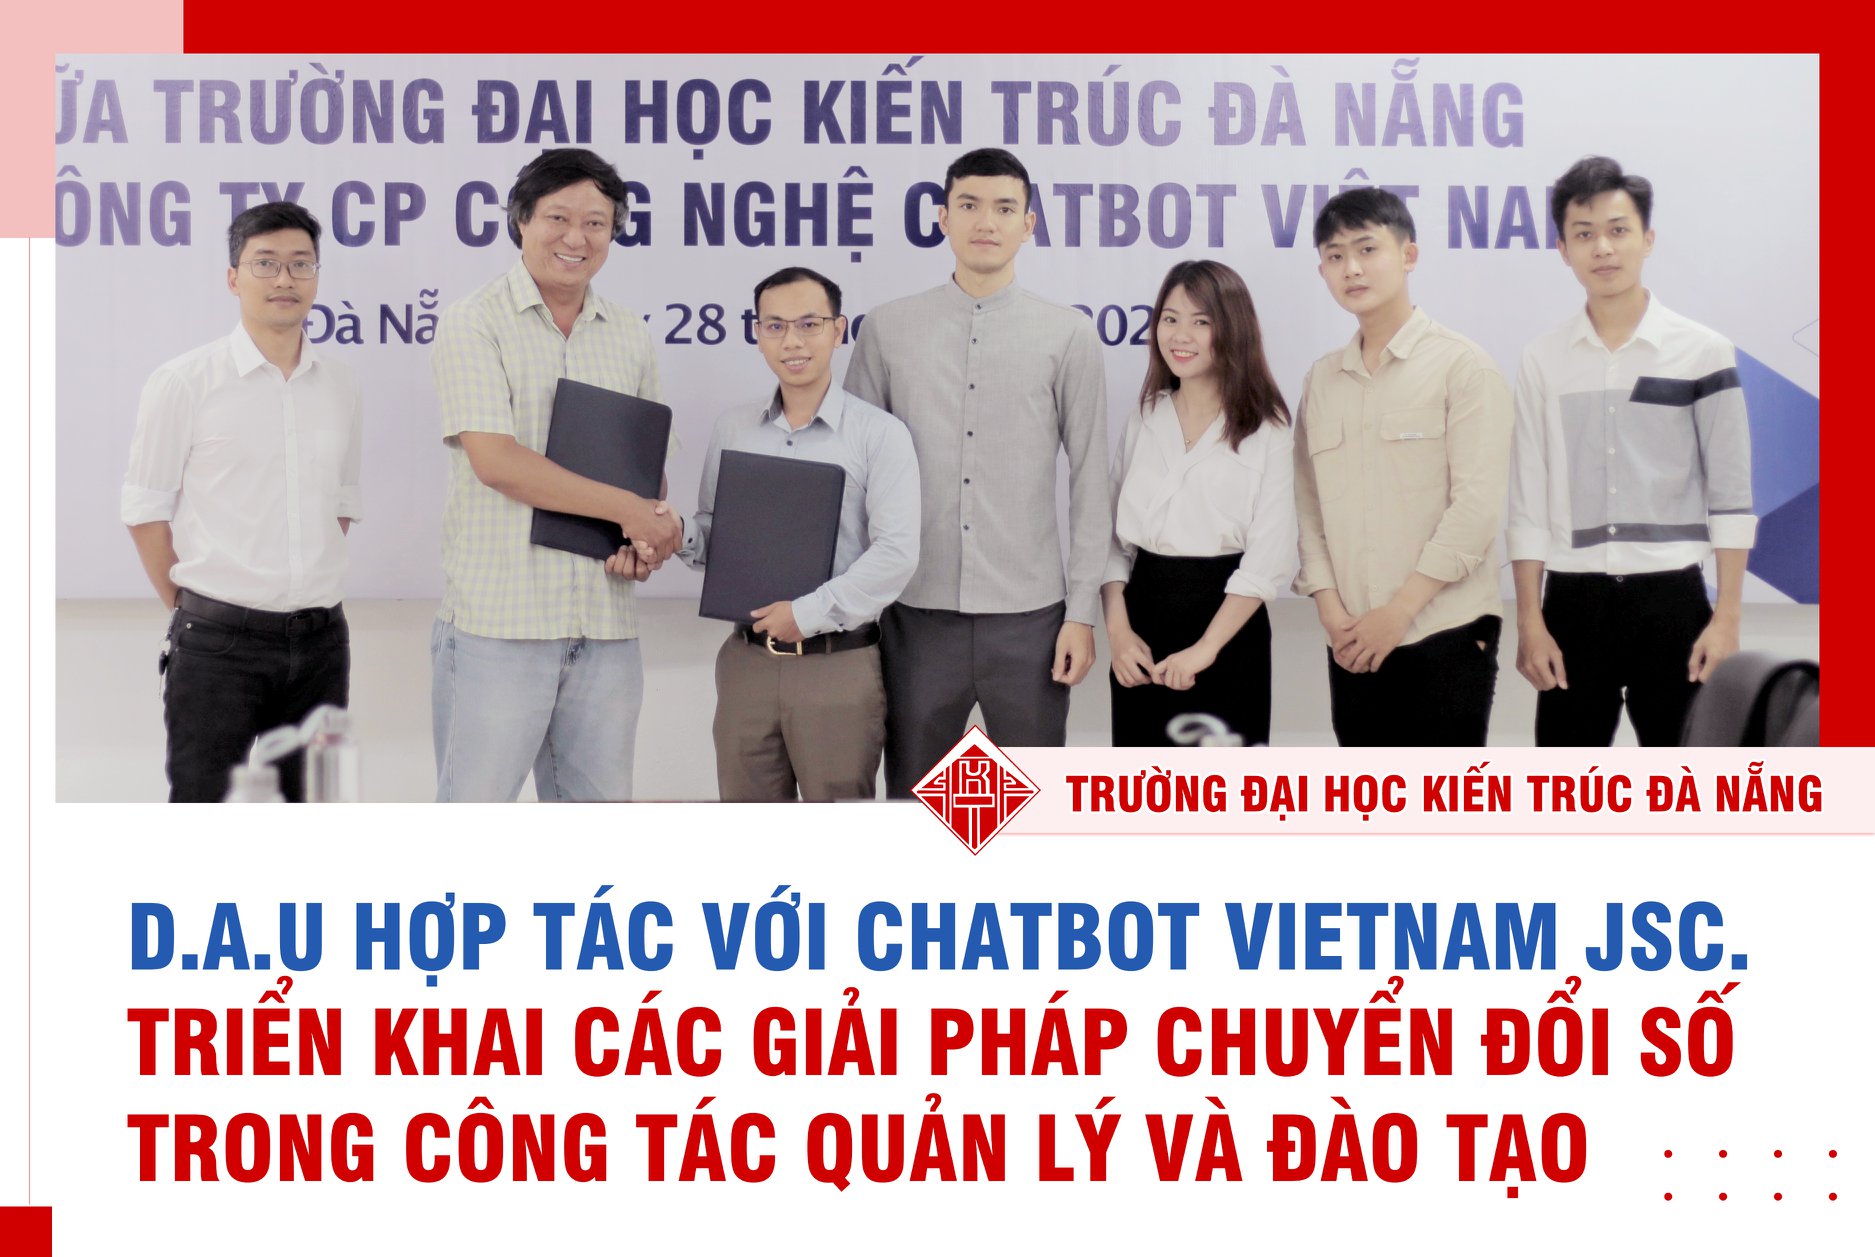 D.A.U hợp tác với Chatbot VietNam JSC. Triển khai các giải pháp chuyển đổi số trong công tác quản lý và đào tạo 